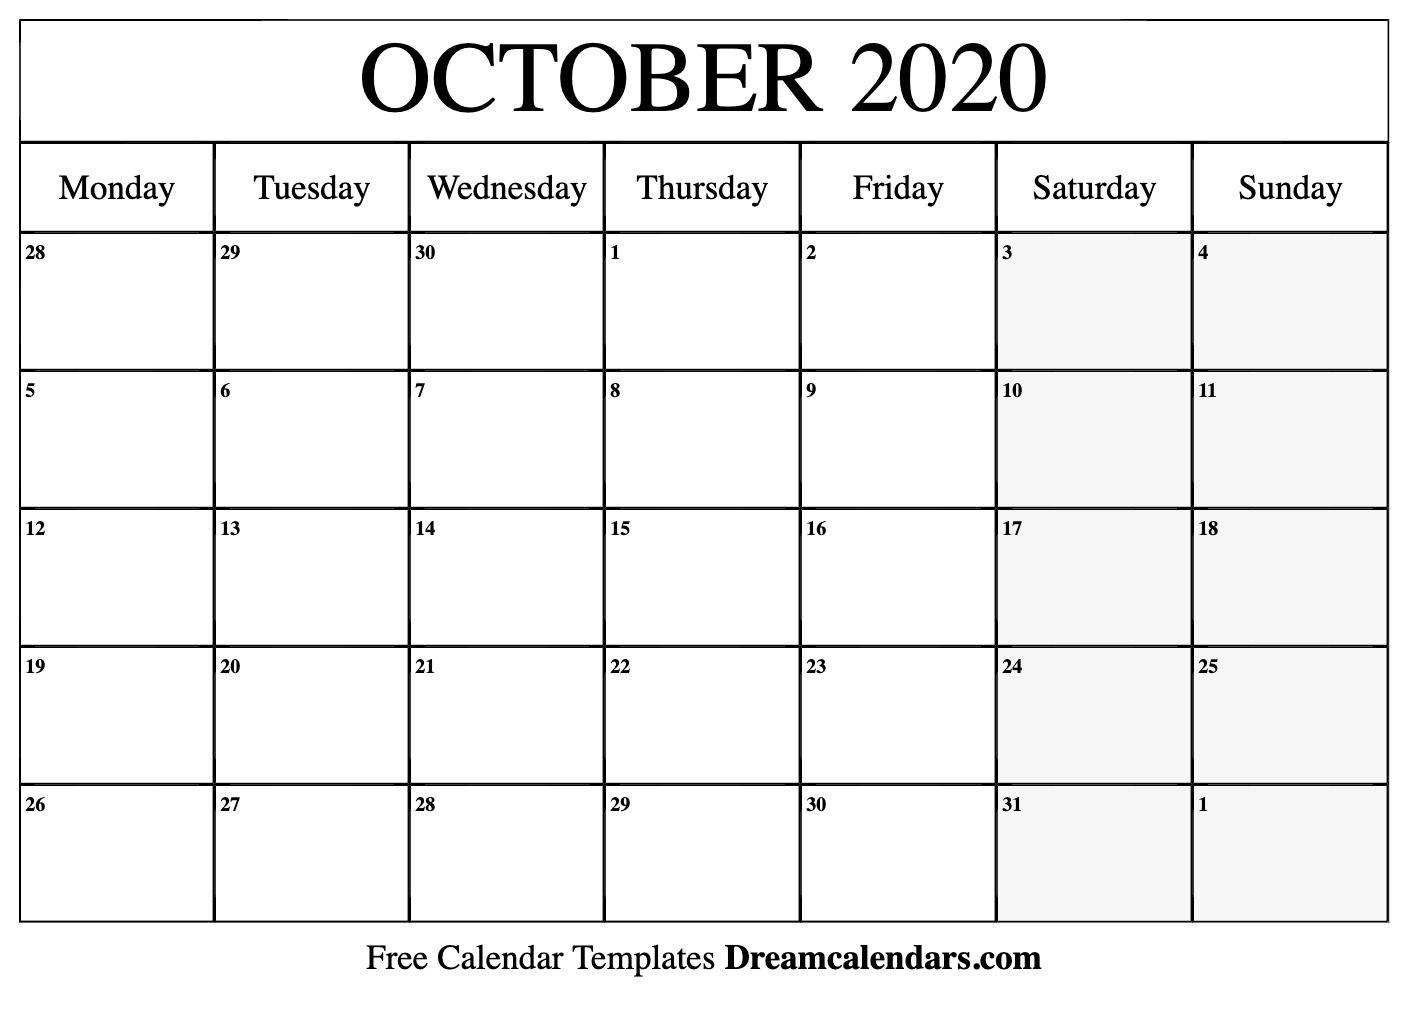 October 2020 Calendar Wallpaper Free October 2020